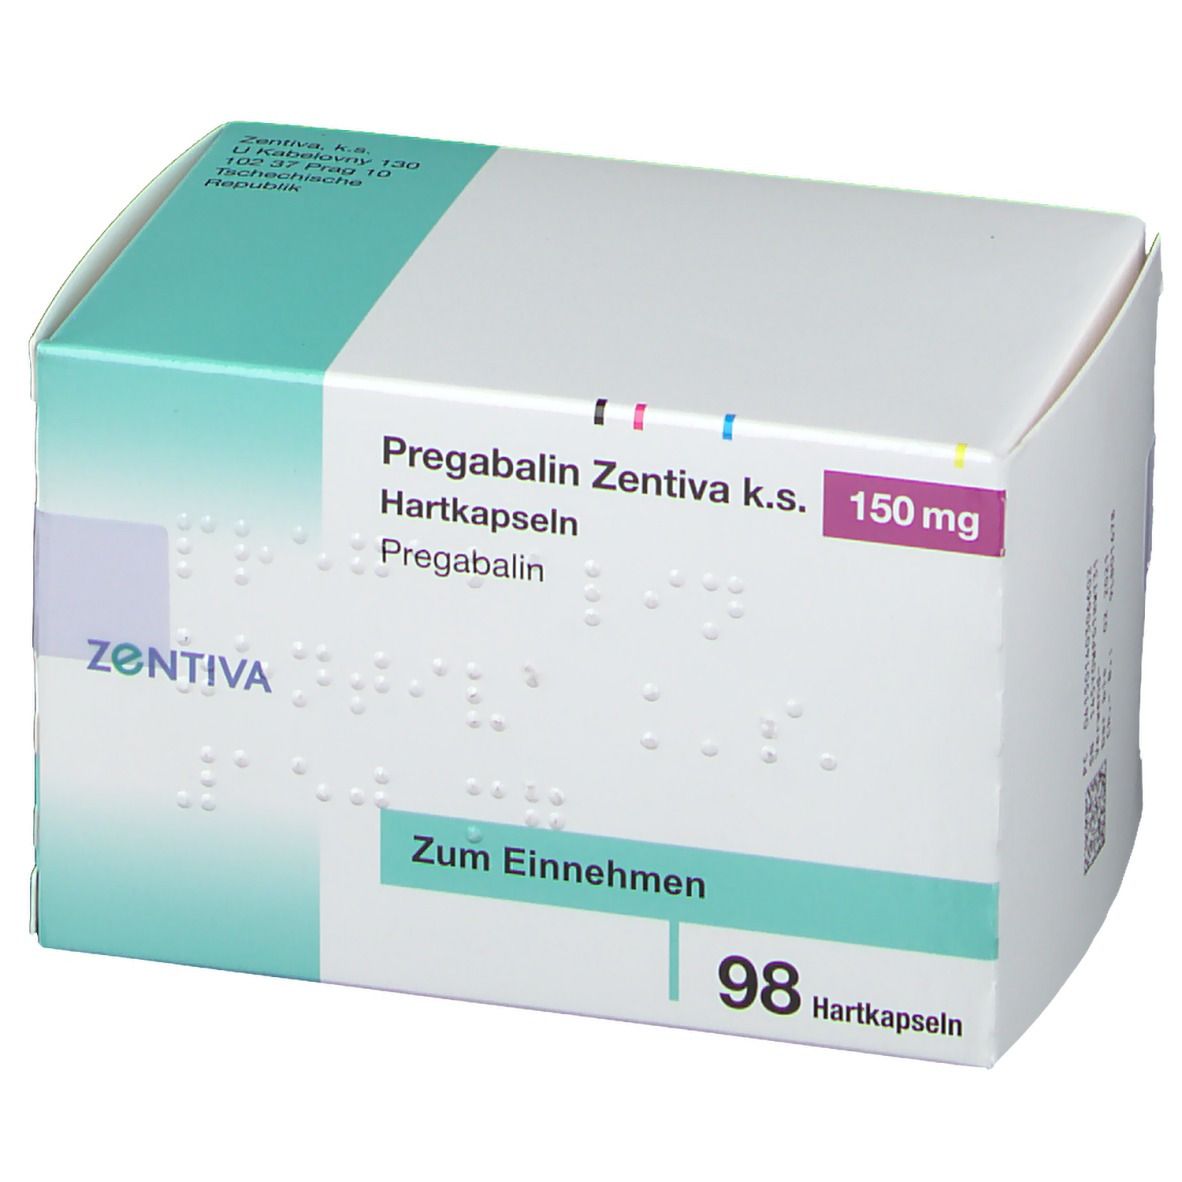 Pregabalin Zentiva® k.s. 150 mg